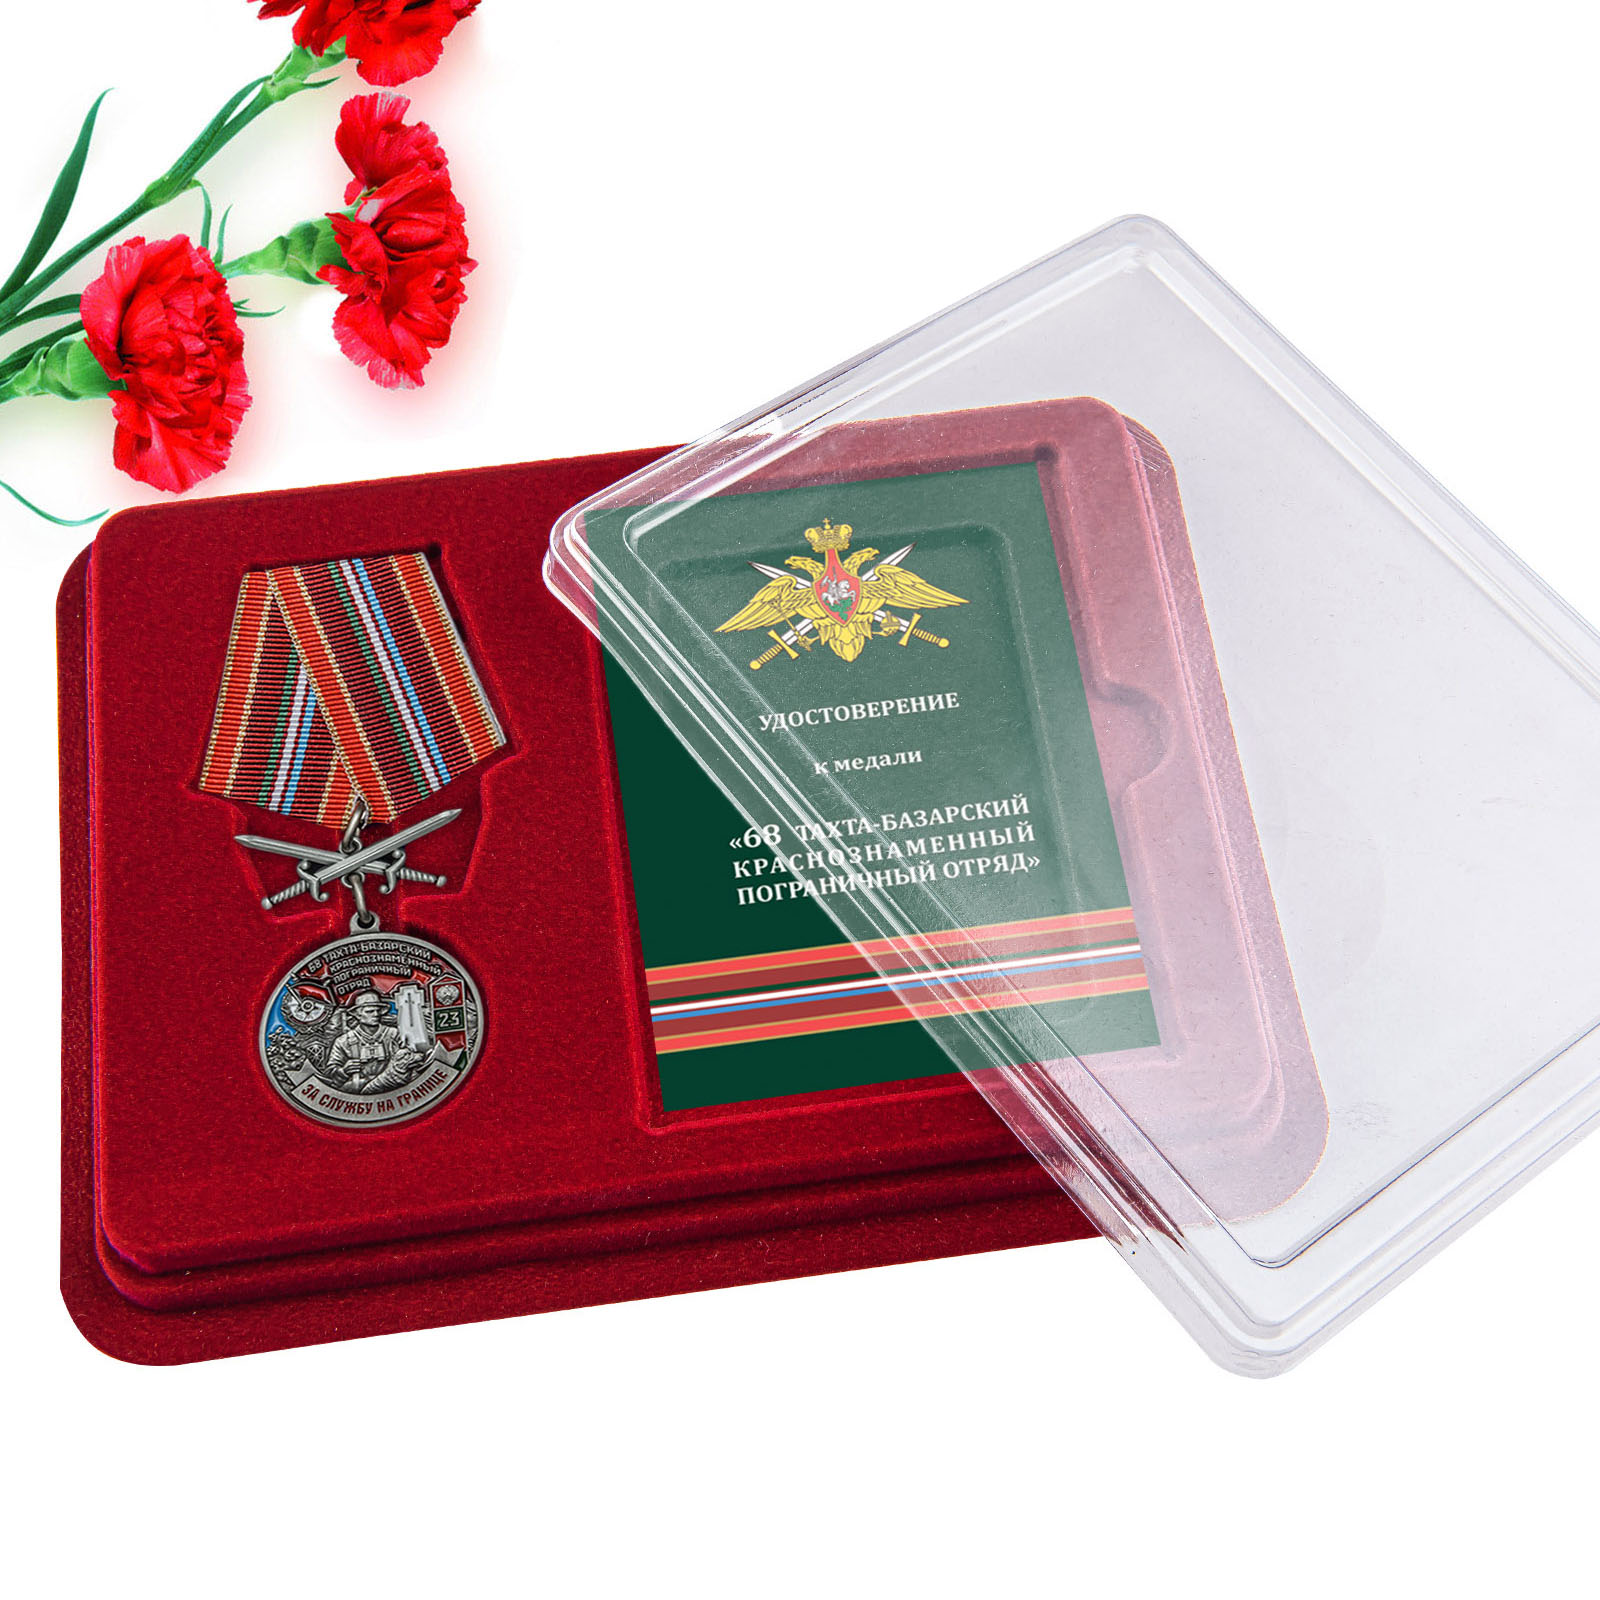 Купить медаль За службу в Тахта-Базарском пограничном отряде в подарок